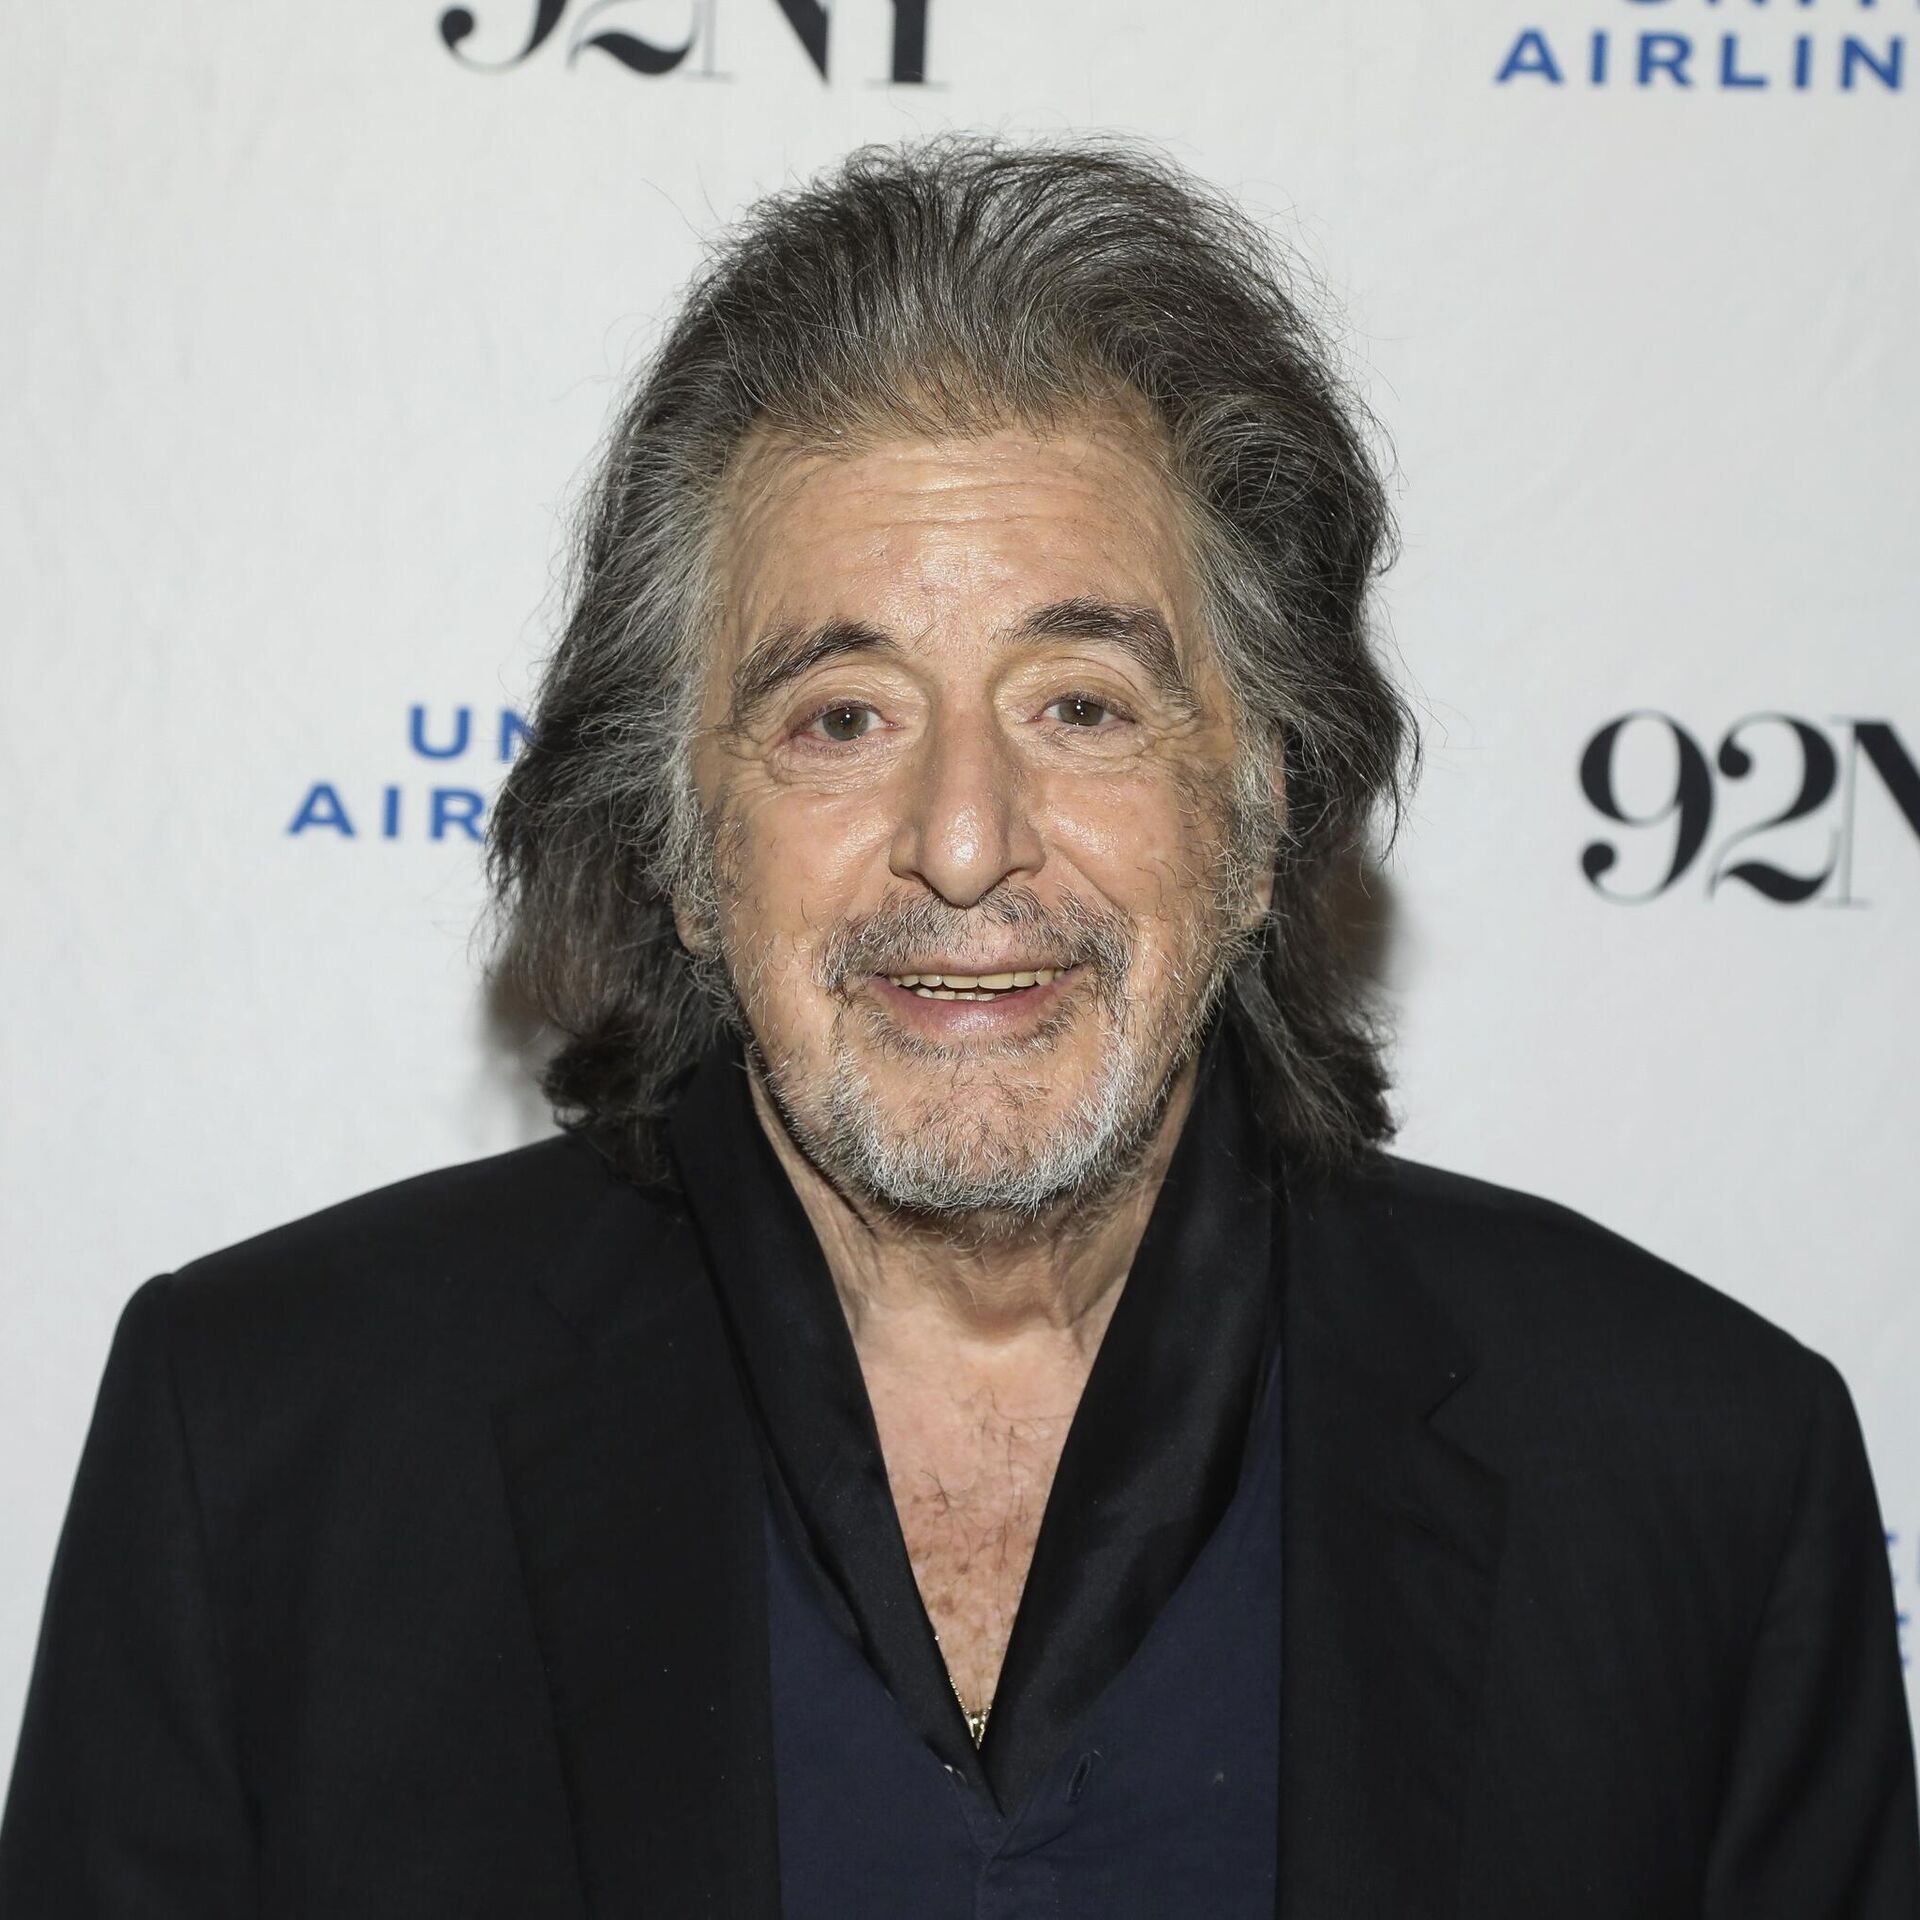 82 Al Pacino baba oluyor! Kız arkadaşı hakkında şoke eden iddia!